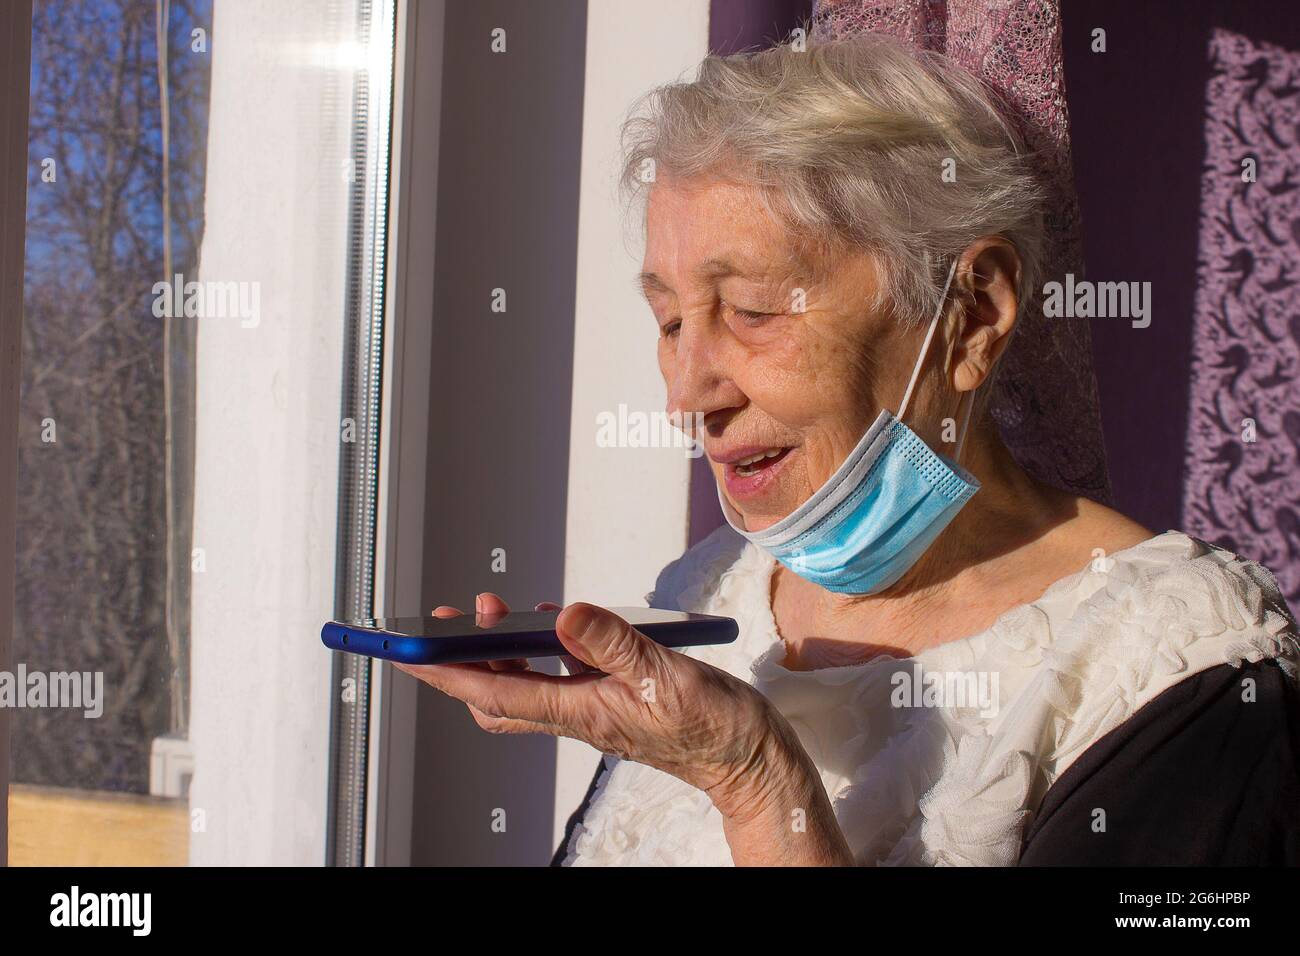 Nonna con smartphone che fa un messaggio audio sul gadget, donna matura che usa il cellulare con assistente vocale digitale virtuale. Covid-19, salute, pandemia - senior a casa per la protezione dal virus Foto Stock